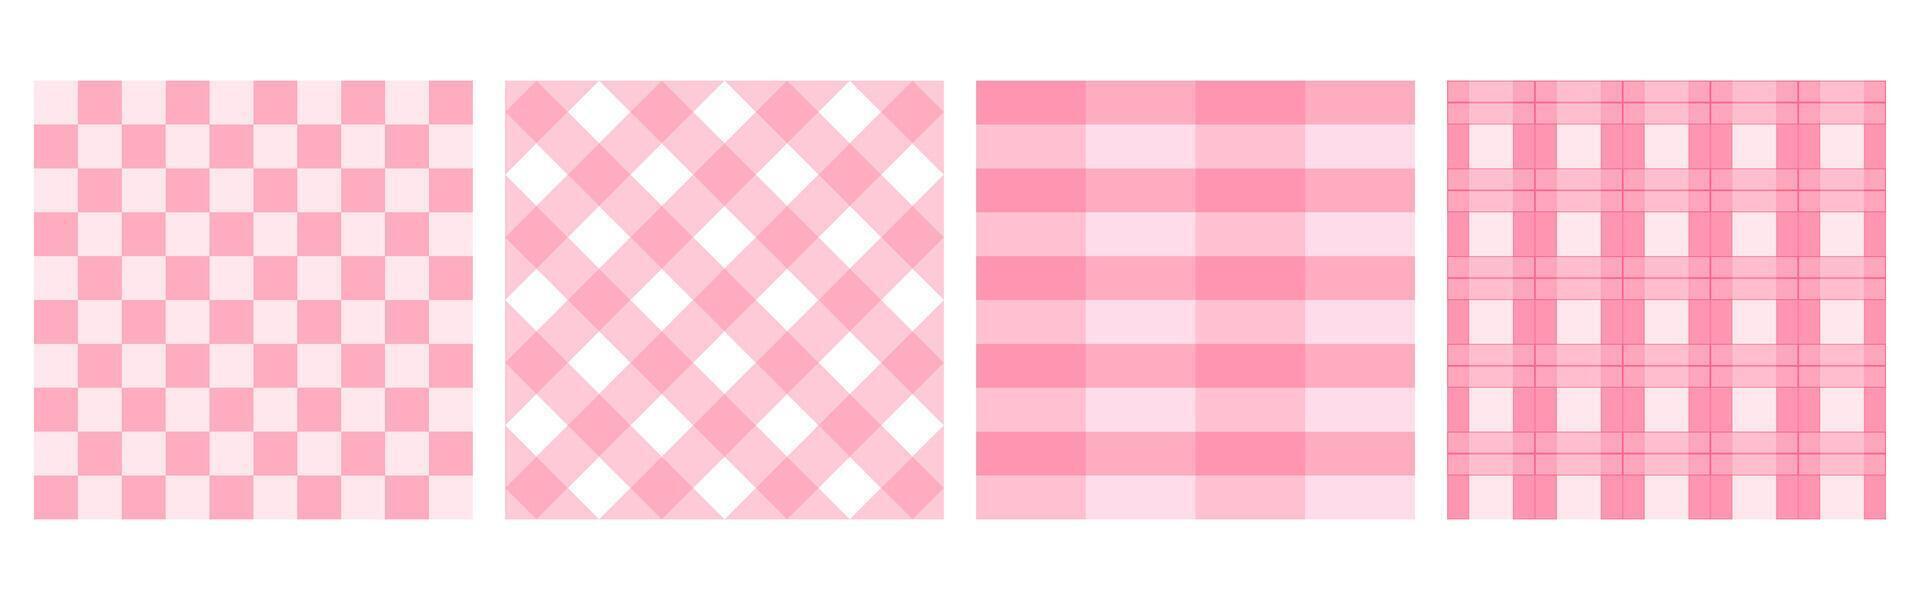 rosa e bianca plaid tartan senza soluzione di continuità modello. scacchi picnic cucinando tavolo stoffa vettore